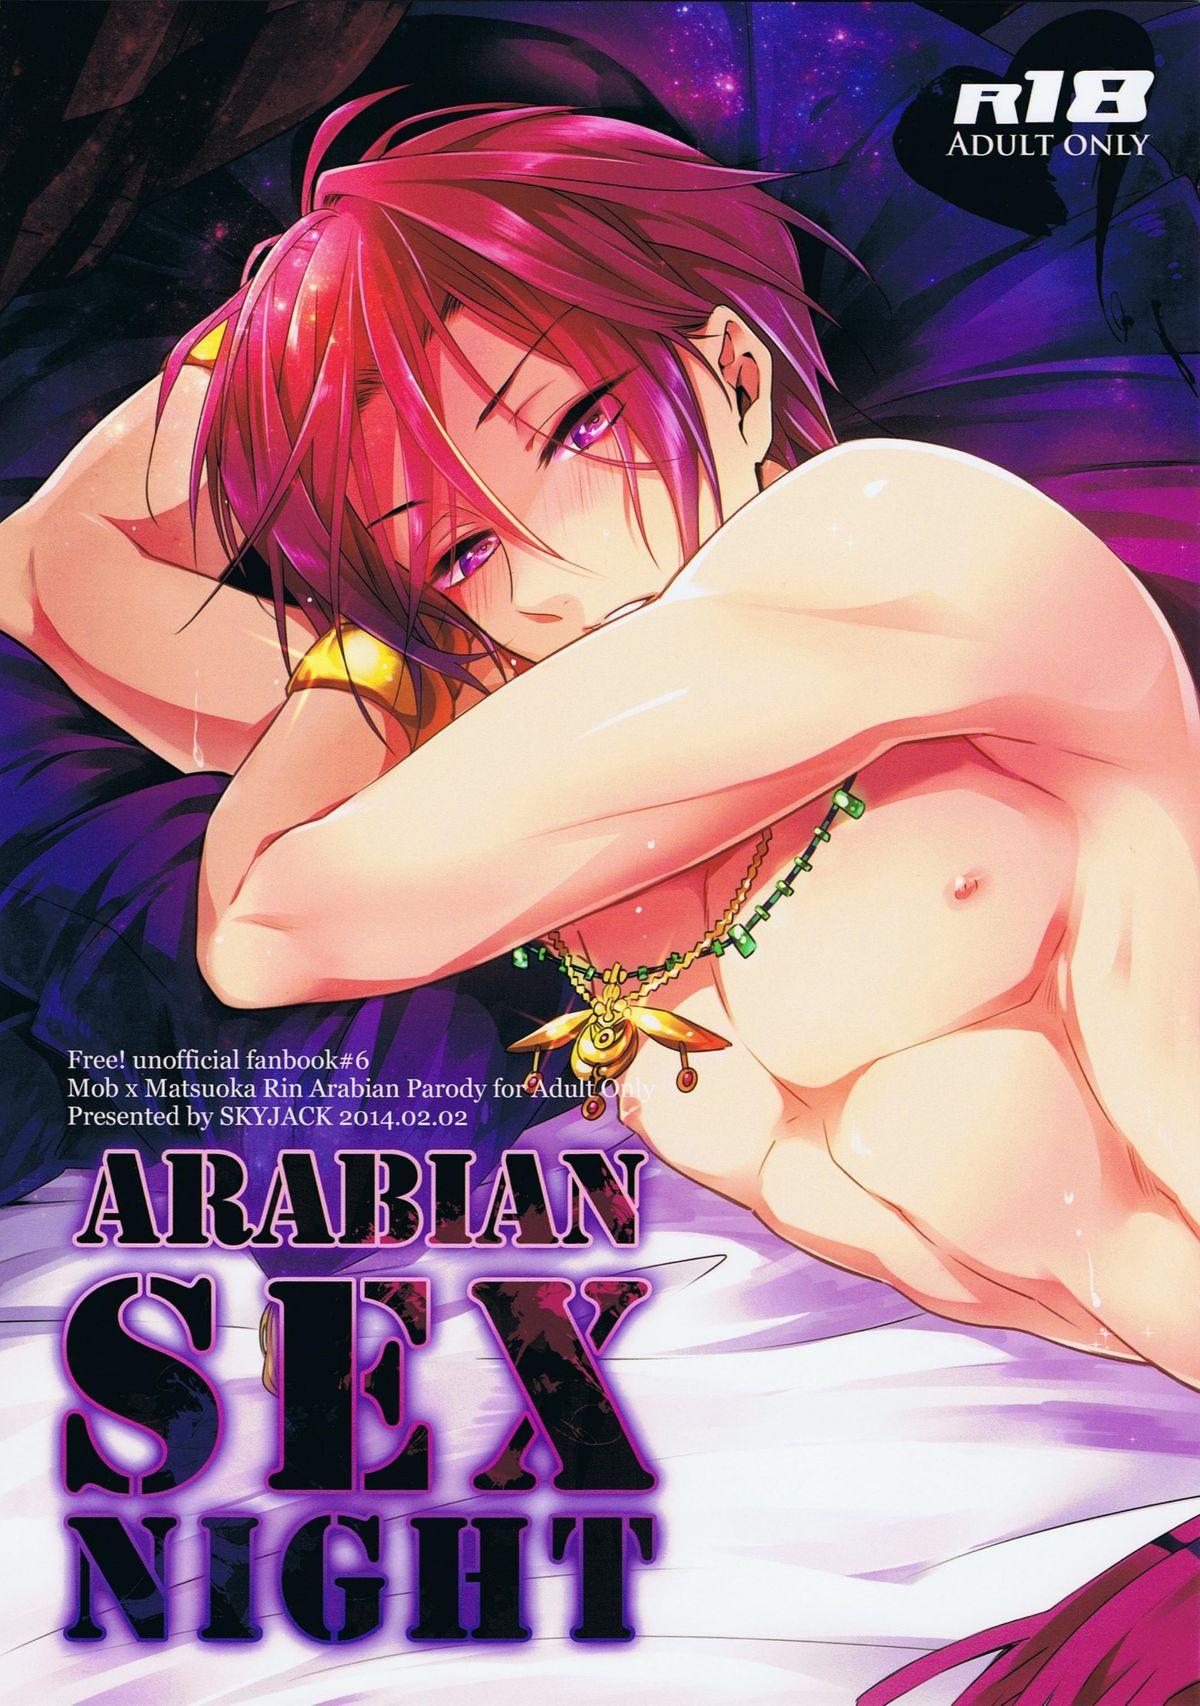 ARABIAN SEX NIGHT 0